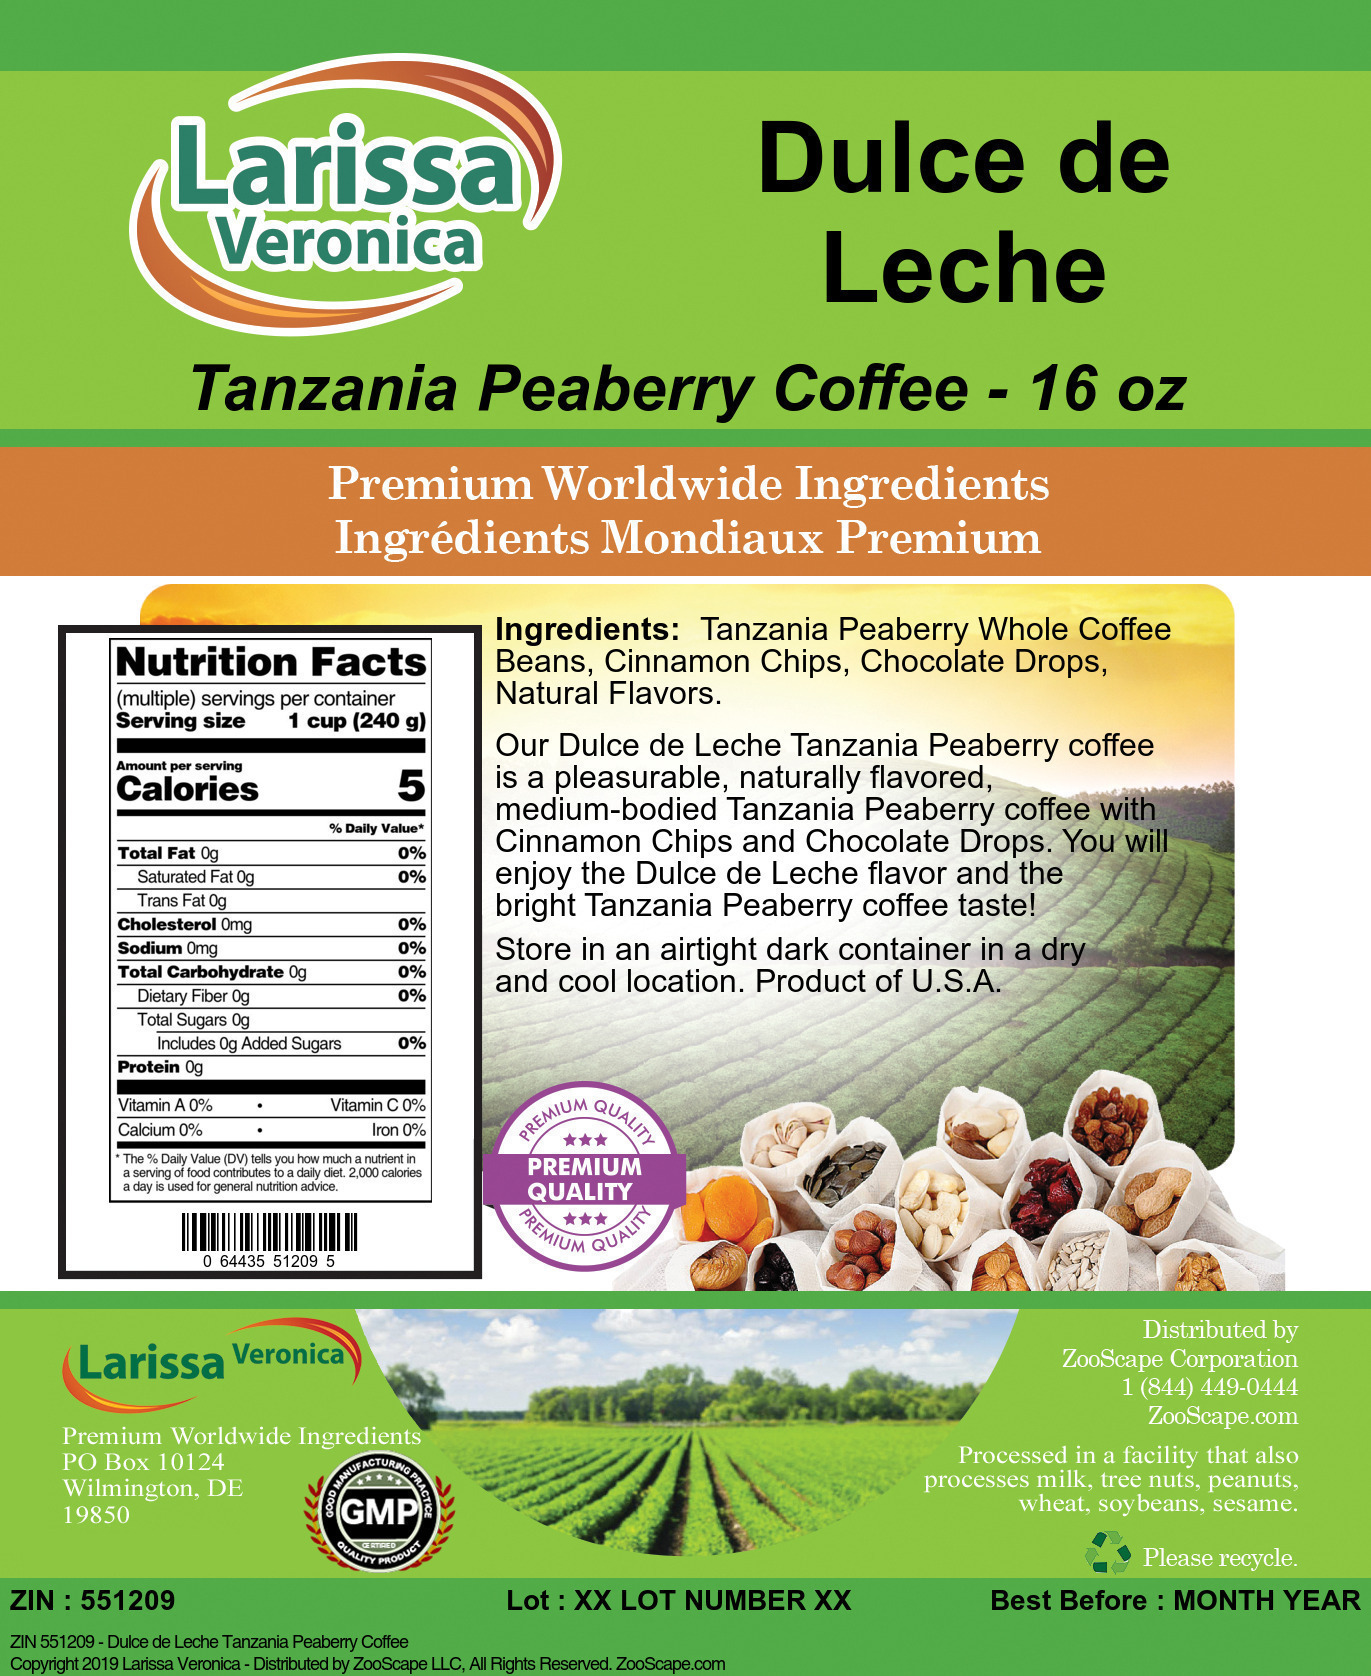 Dulce de Leche Tanzania Peaberry Coffee - Label